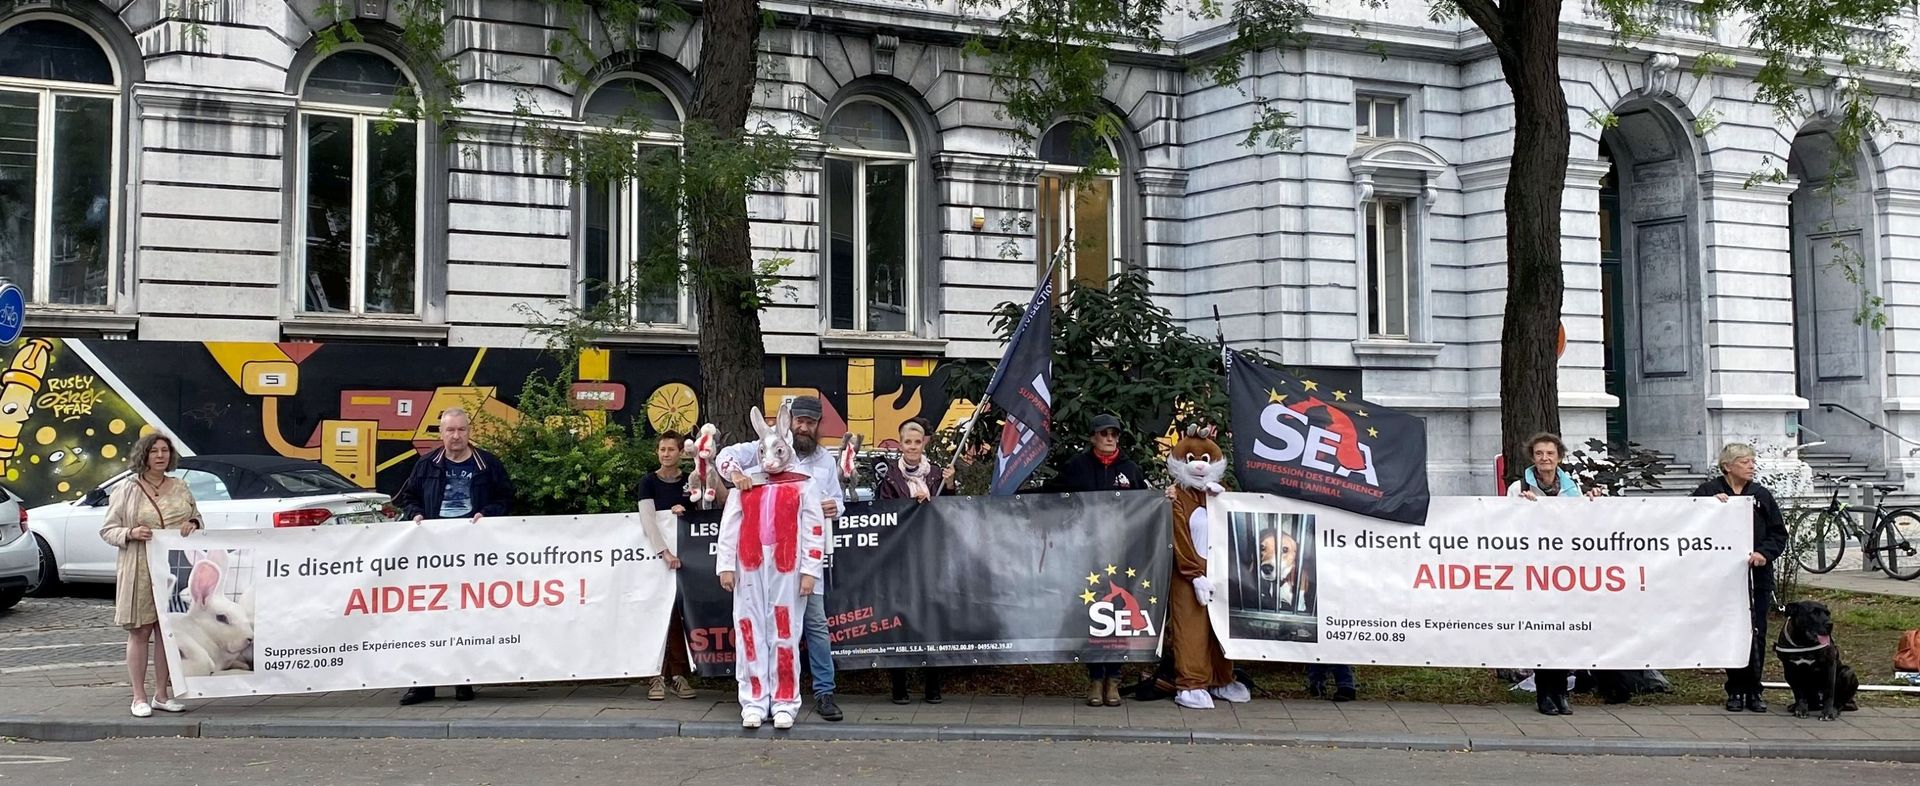 Manifestation contre l'expérimentation animale devant le bâtiment central de l'Université